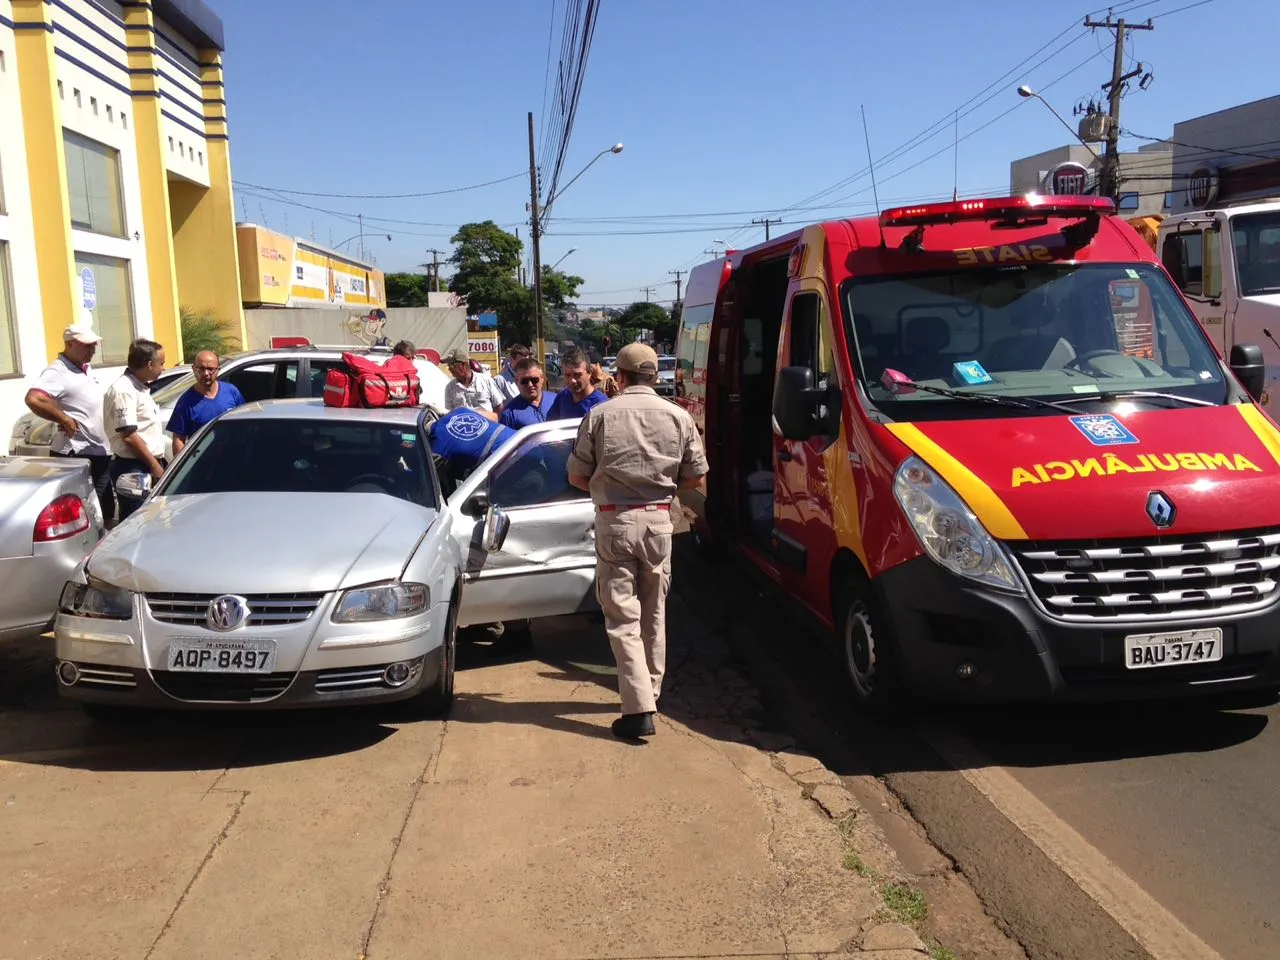 Caminhão arrasta VW Gol por 30 metros na Avenida Minas Gerais e deixa motorista do carro ferido